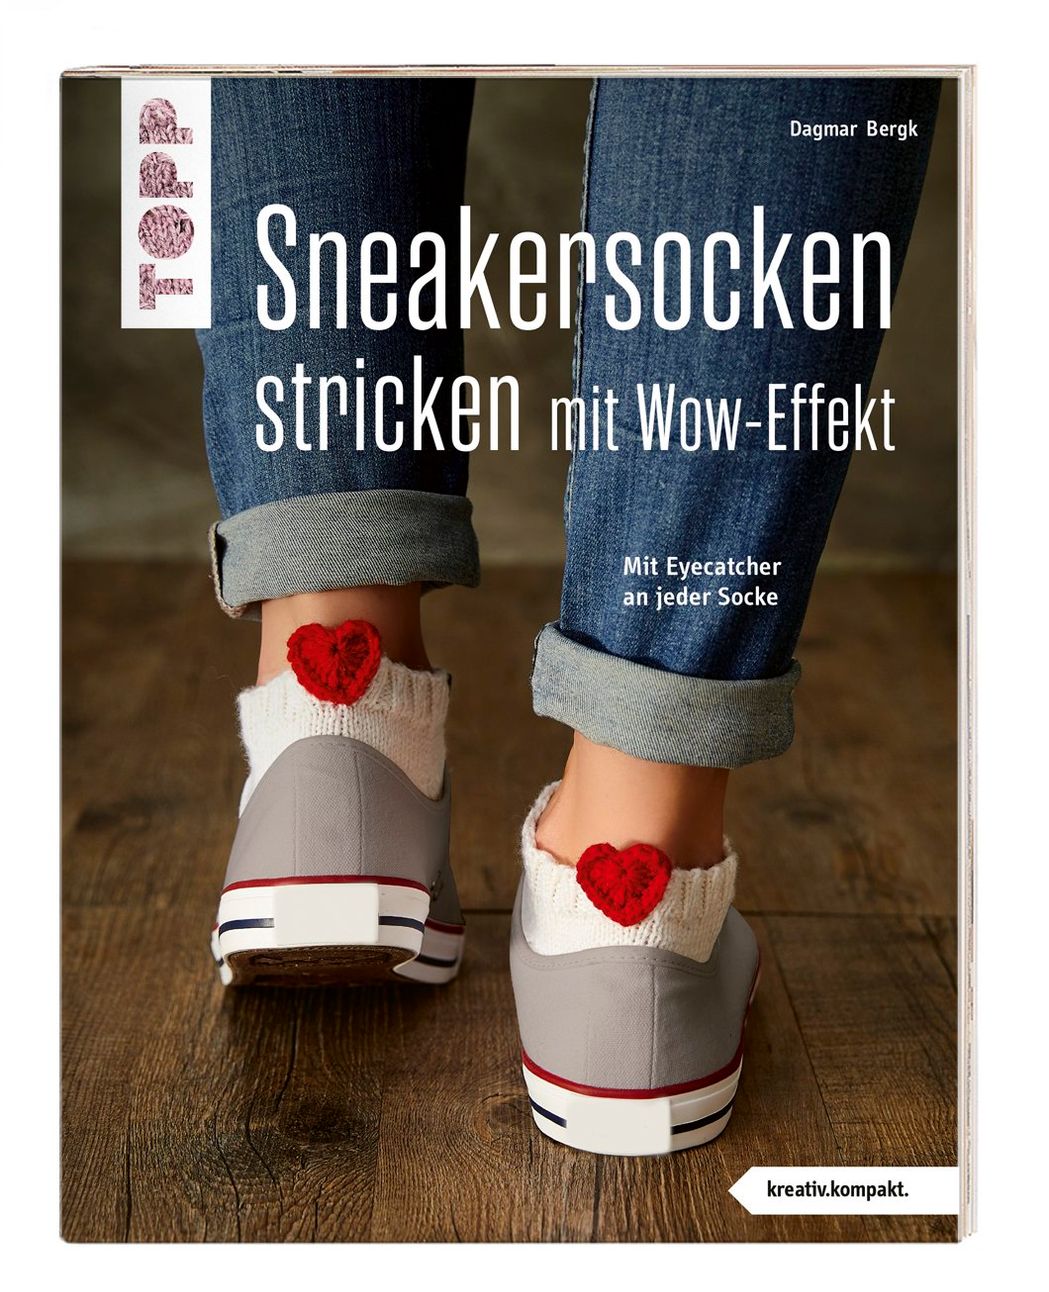 Sneakersocken stricken mit Wow-Effekt Buch - Weltbild.ch